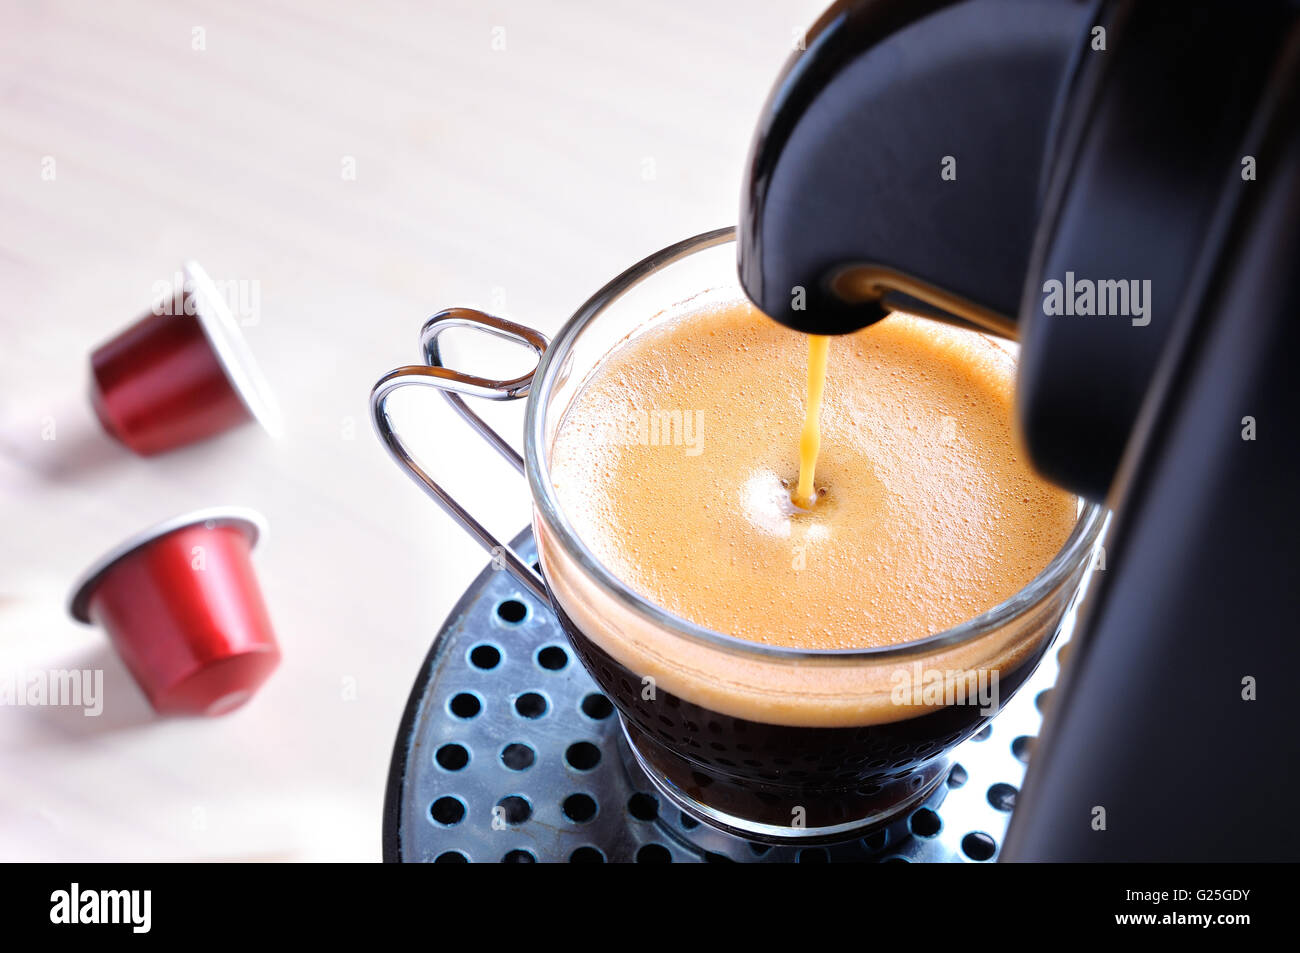 Au service de la machine à café expresso dans une tasse en verre et deux capsules sur la table Banque D'Images